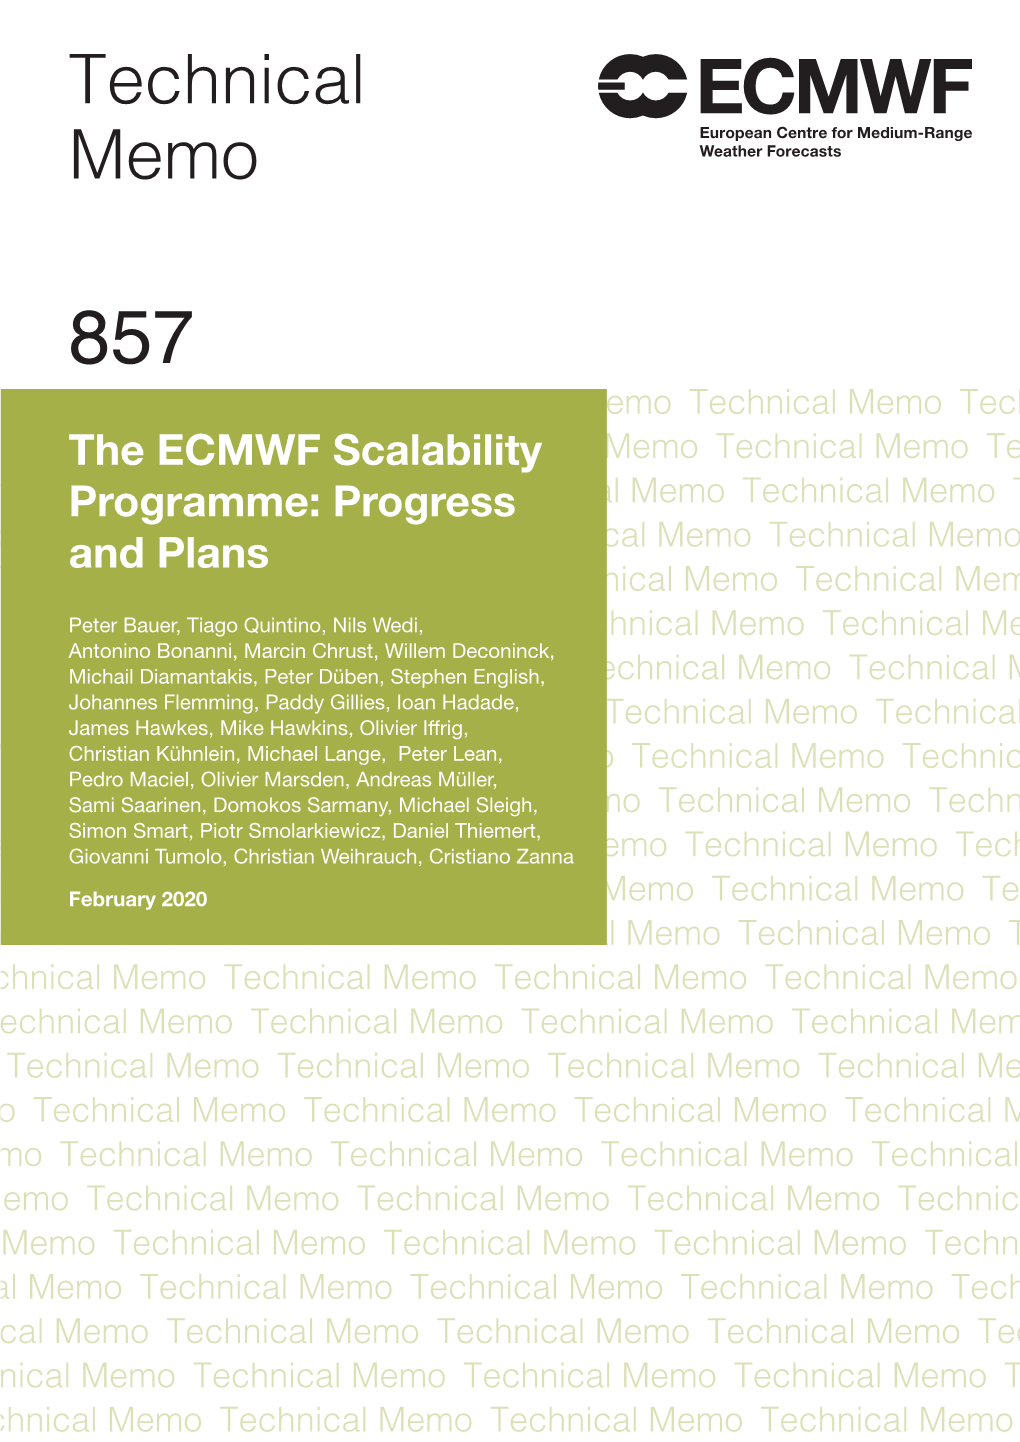 ECMWF Technical Memoranda